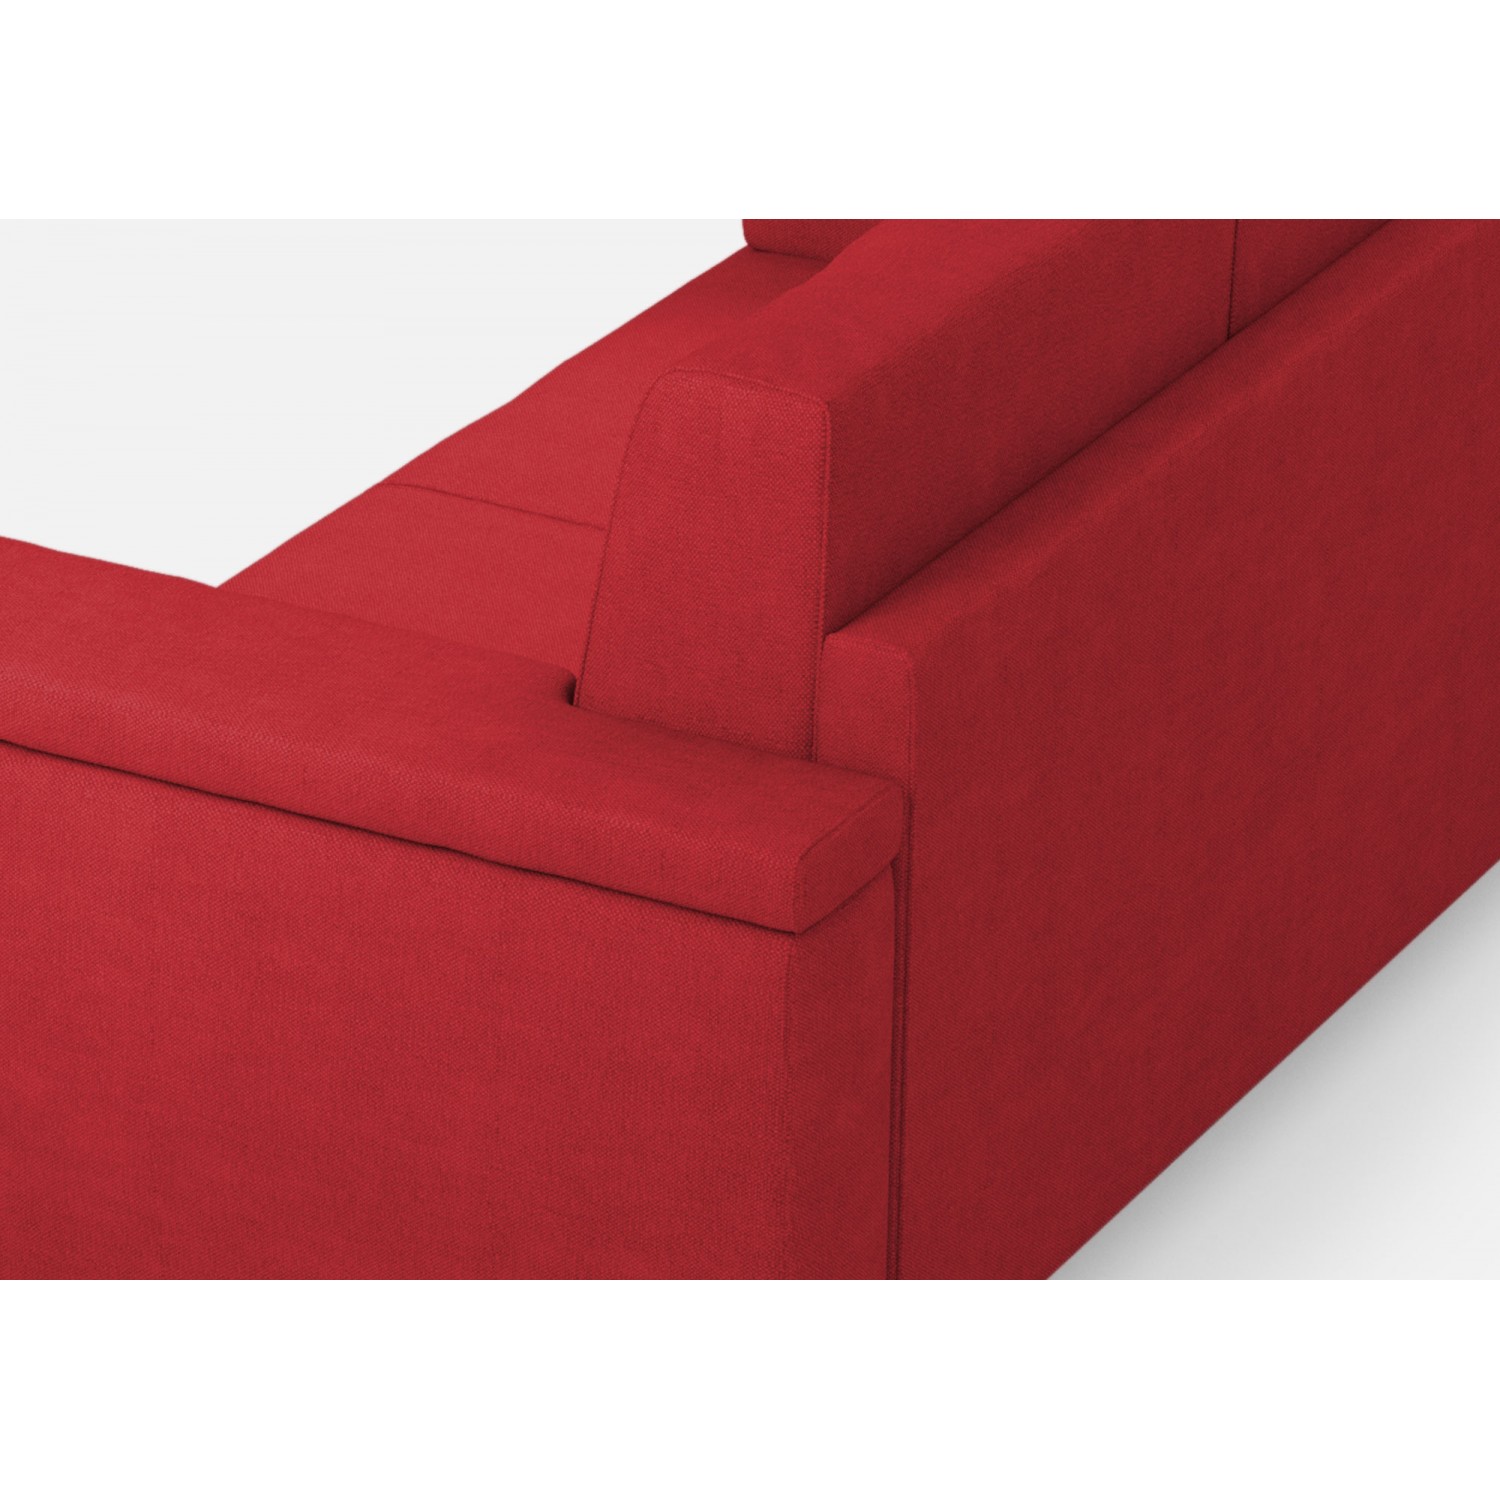 Ityhome Divano Marrak 3 posti (tre sedute da 60cm)+ angolo + divano 2 posti medio (due sedute da 70cm) misure esterne L.286x246 colore rosso